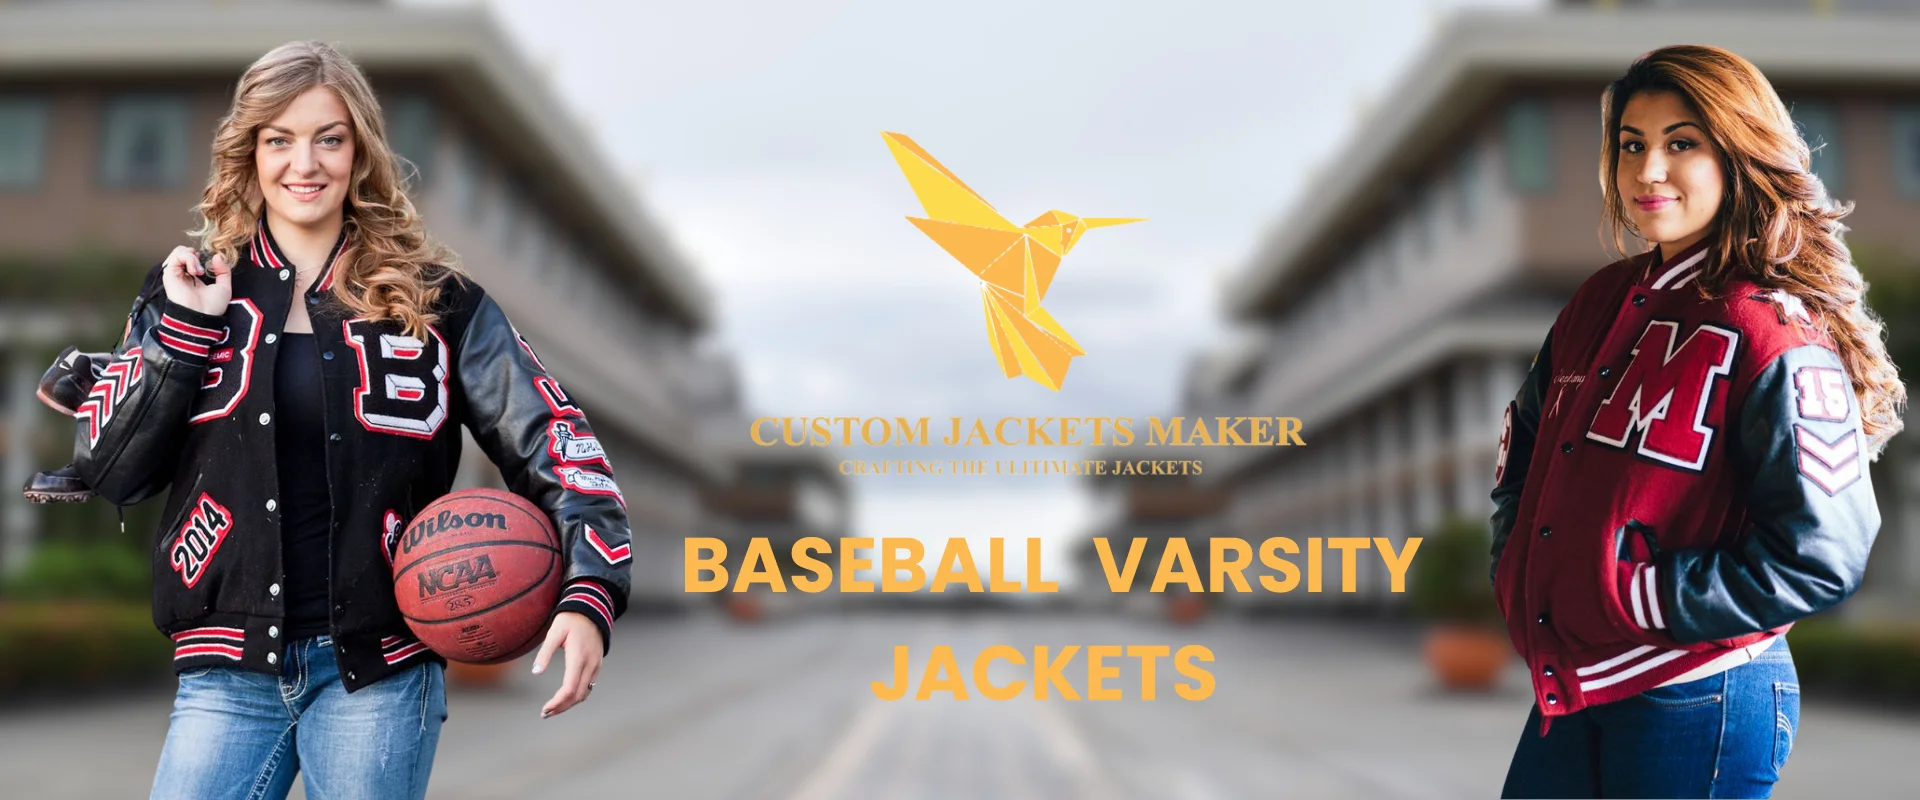 Banner Image of Baseball Varsity jacket